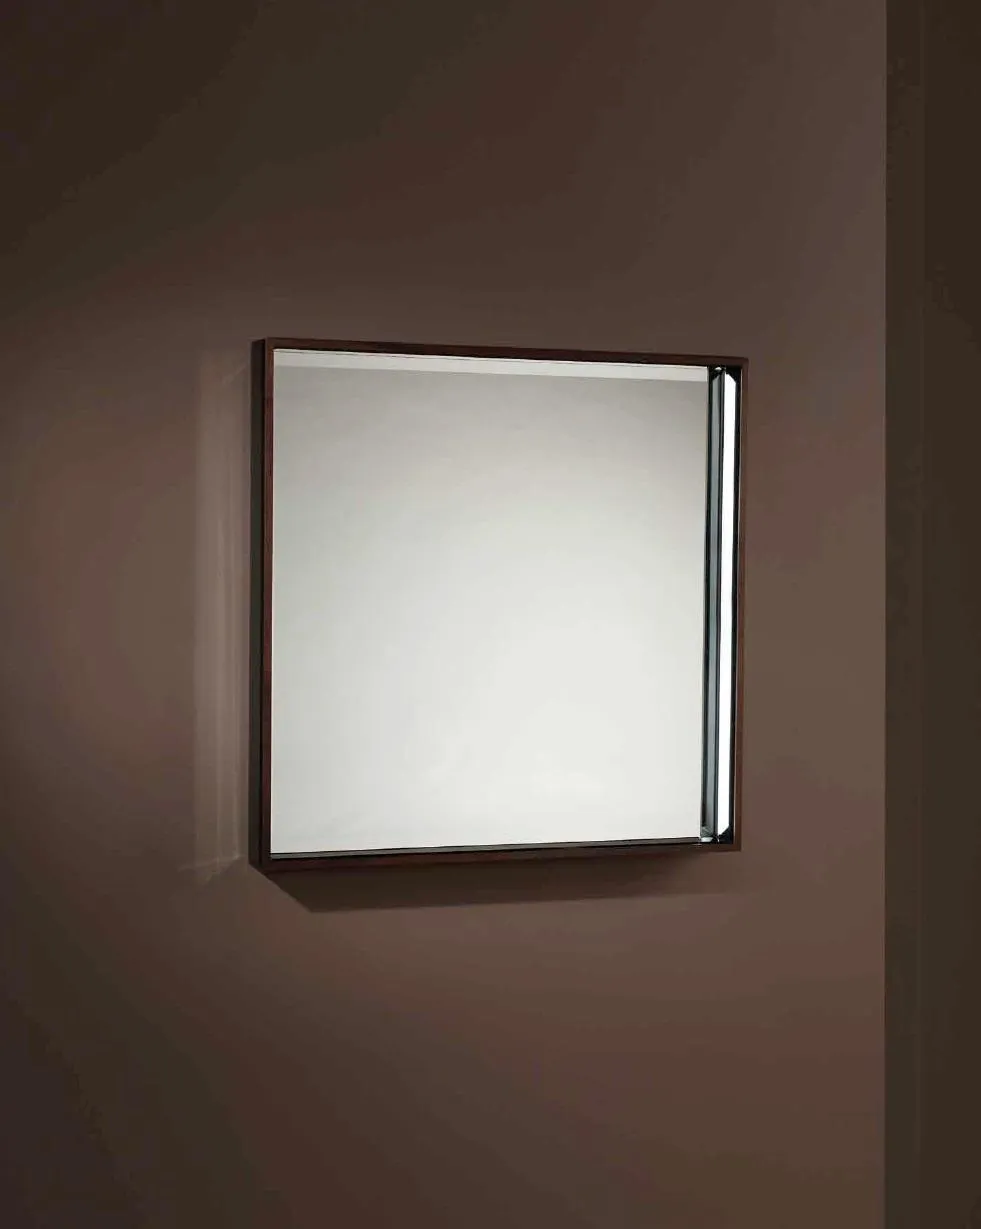 Spiegel mit Wohnzimmer Wandspiegel Wohnzimmer neue braun Rahmenfarbe